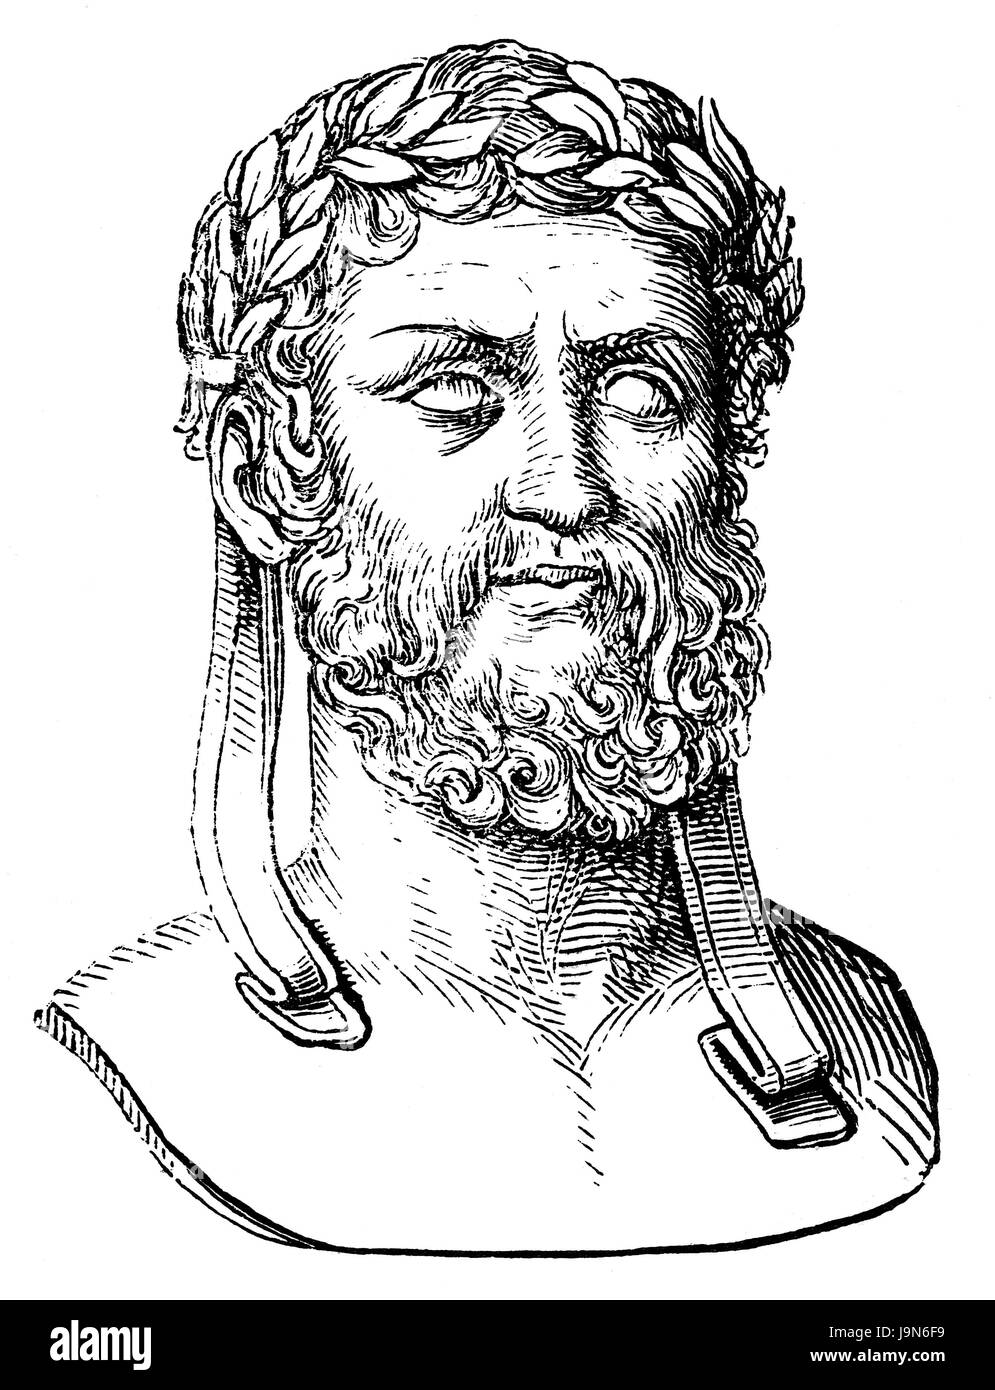 Xénophon d'Athènes), ch. 430-354 avant J.-C., un ancien philosophe grec, Historien, soldat Banque D'Images